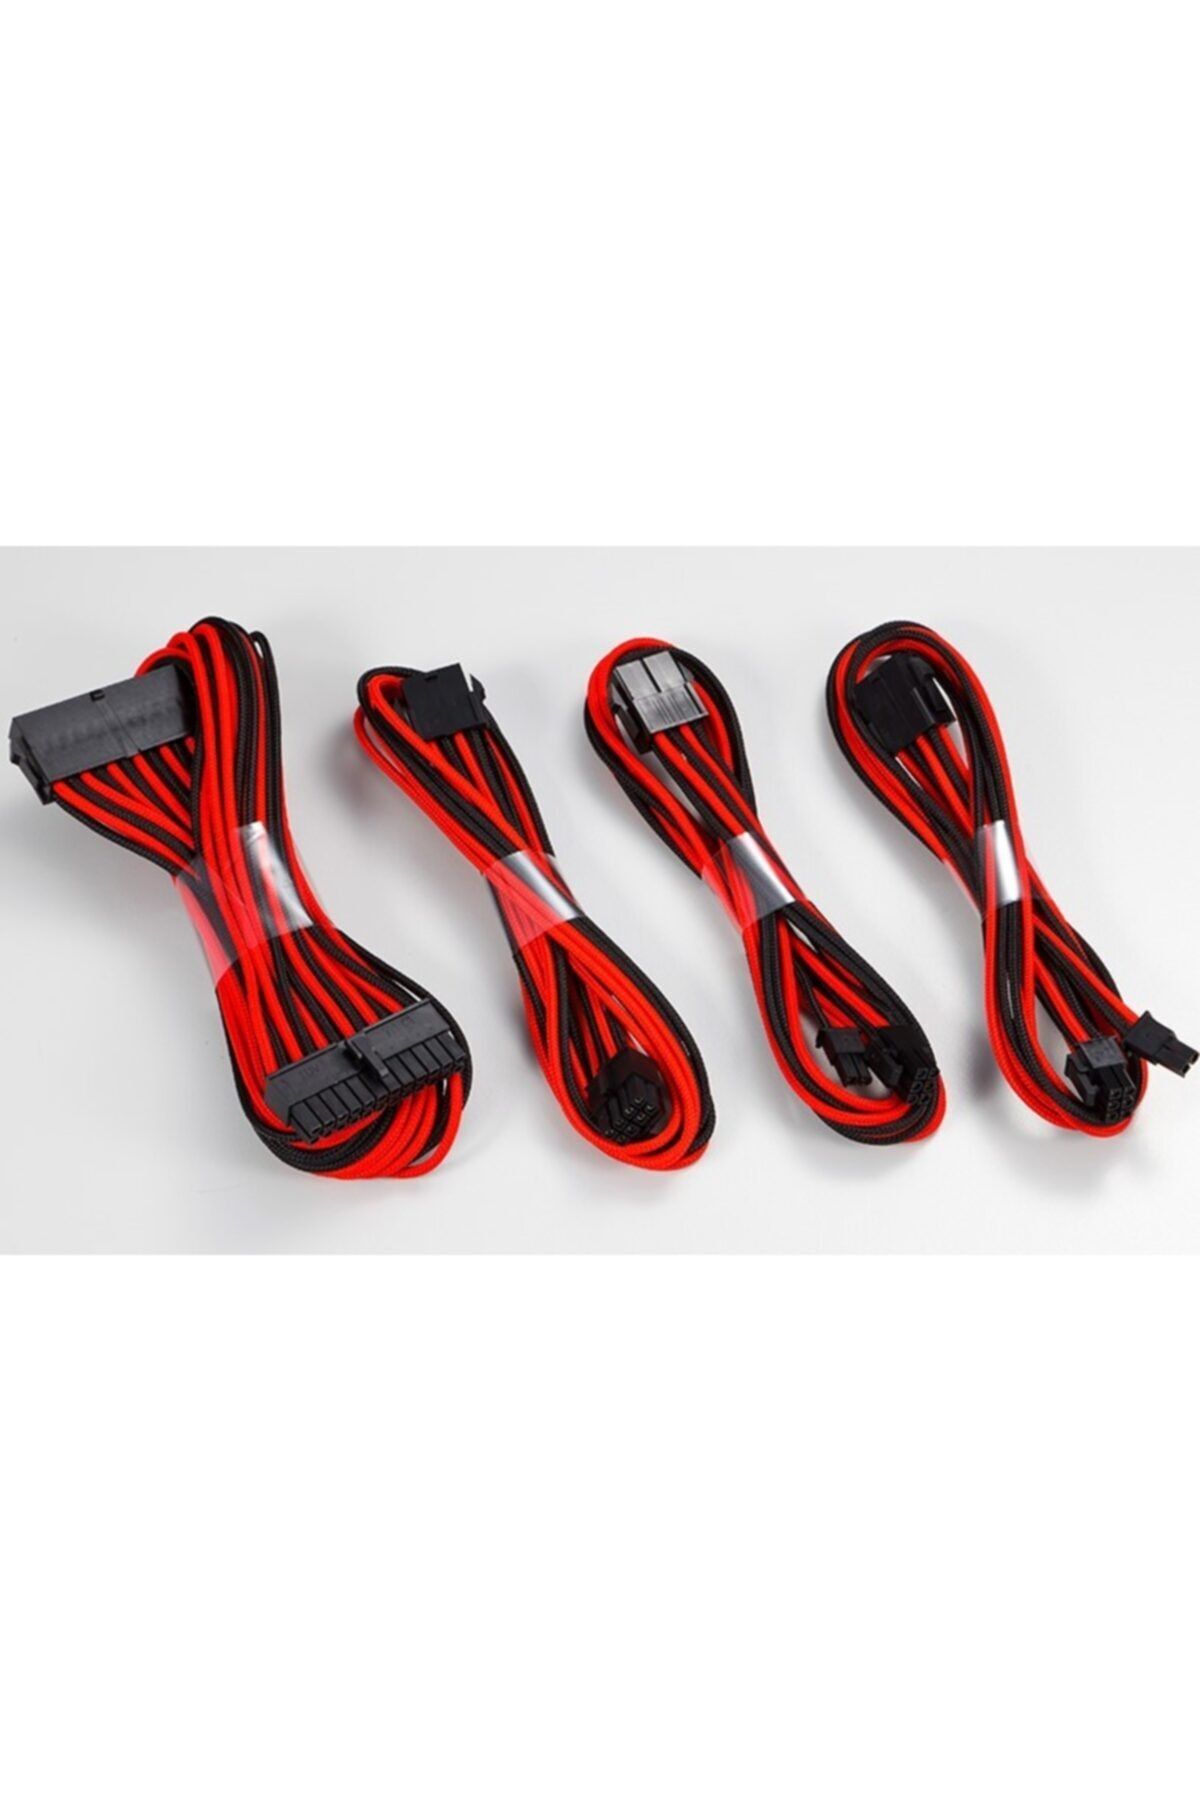 Phanteks Gaming Oyuncu Bilgisayar Extension Kablo Kiti_24p/8p/8v/8v, 500mm Length - Kırmızı/siyah